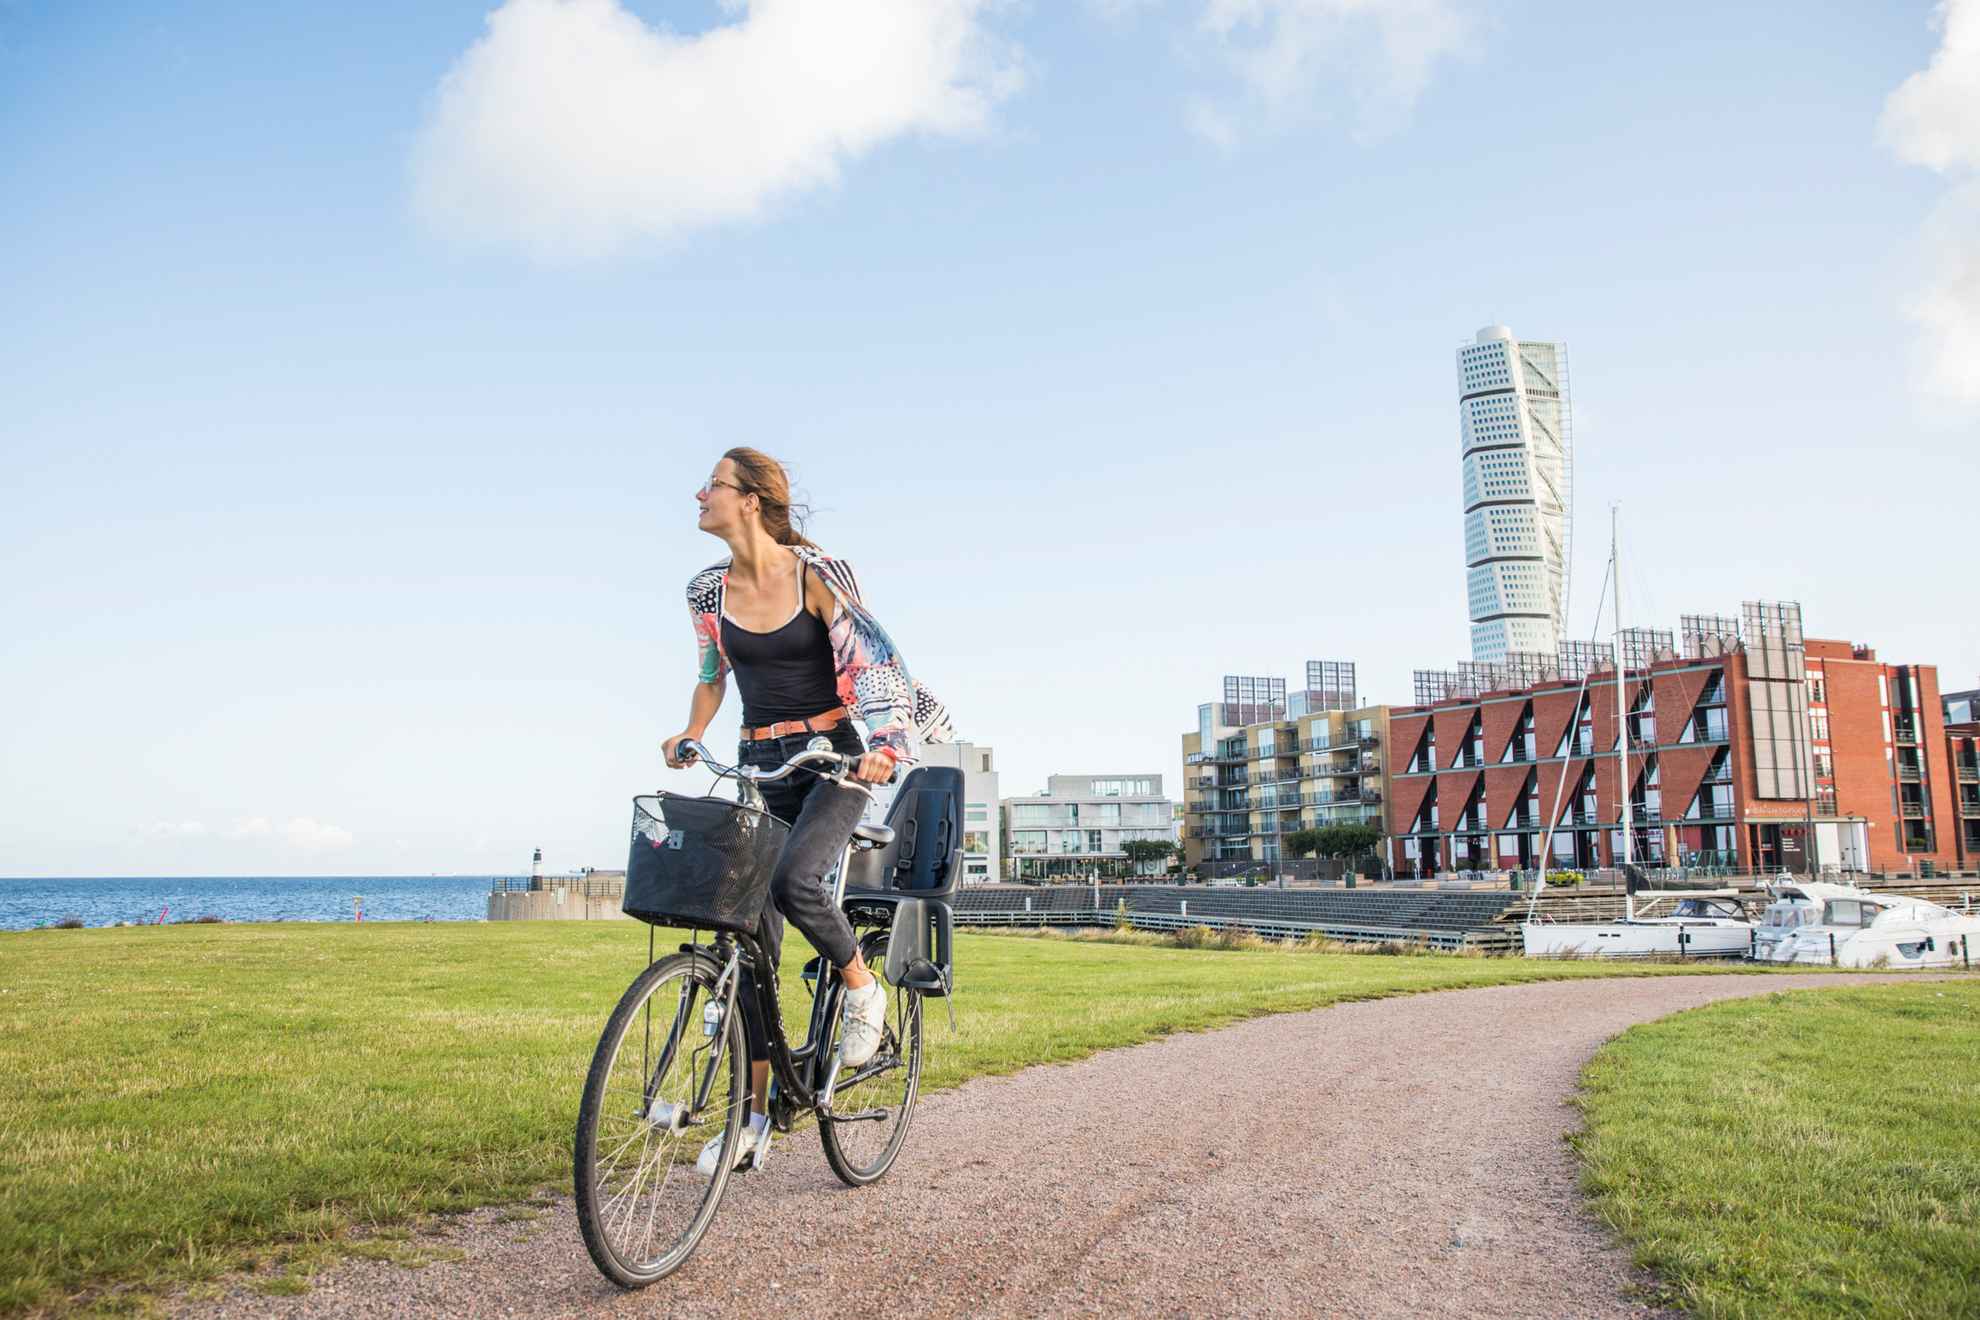 Une femme fait du vélo sur un chemin, derrière on voit un quartier résidentiel au bord de la mer et au milieu un gratte-ciel.